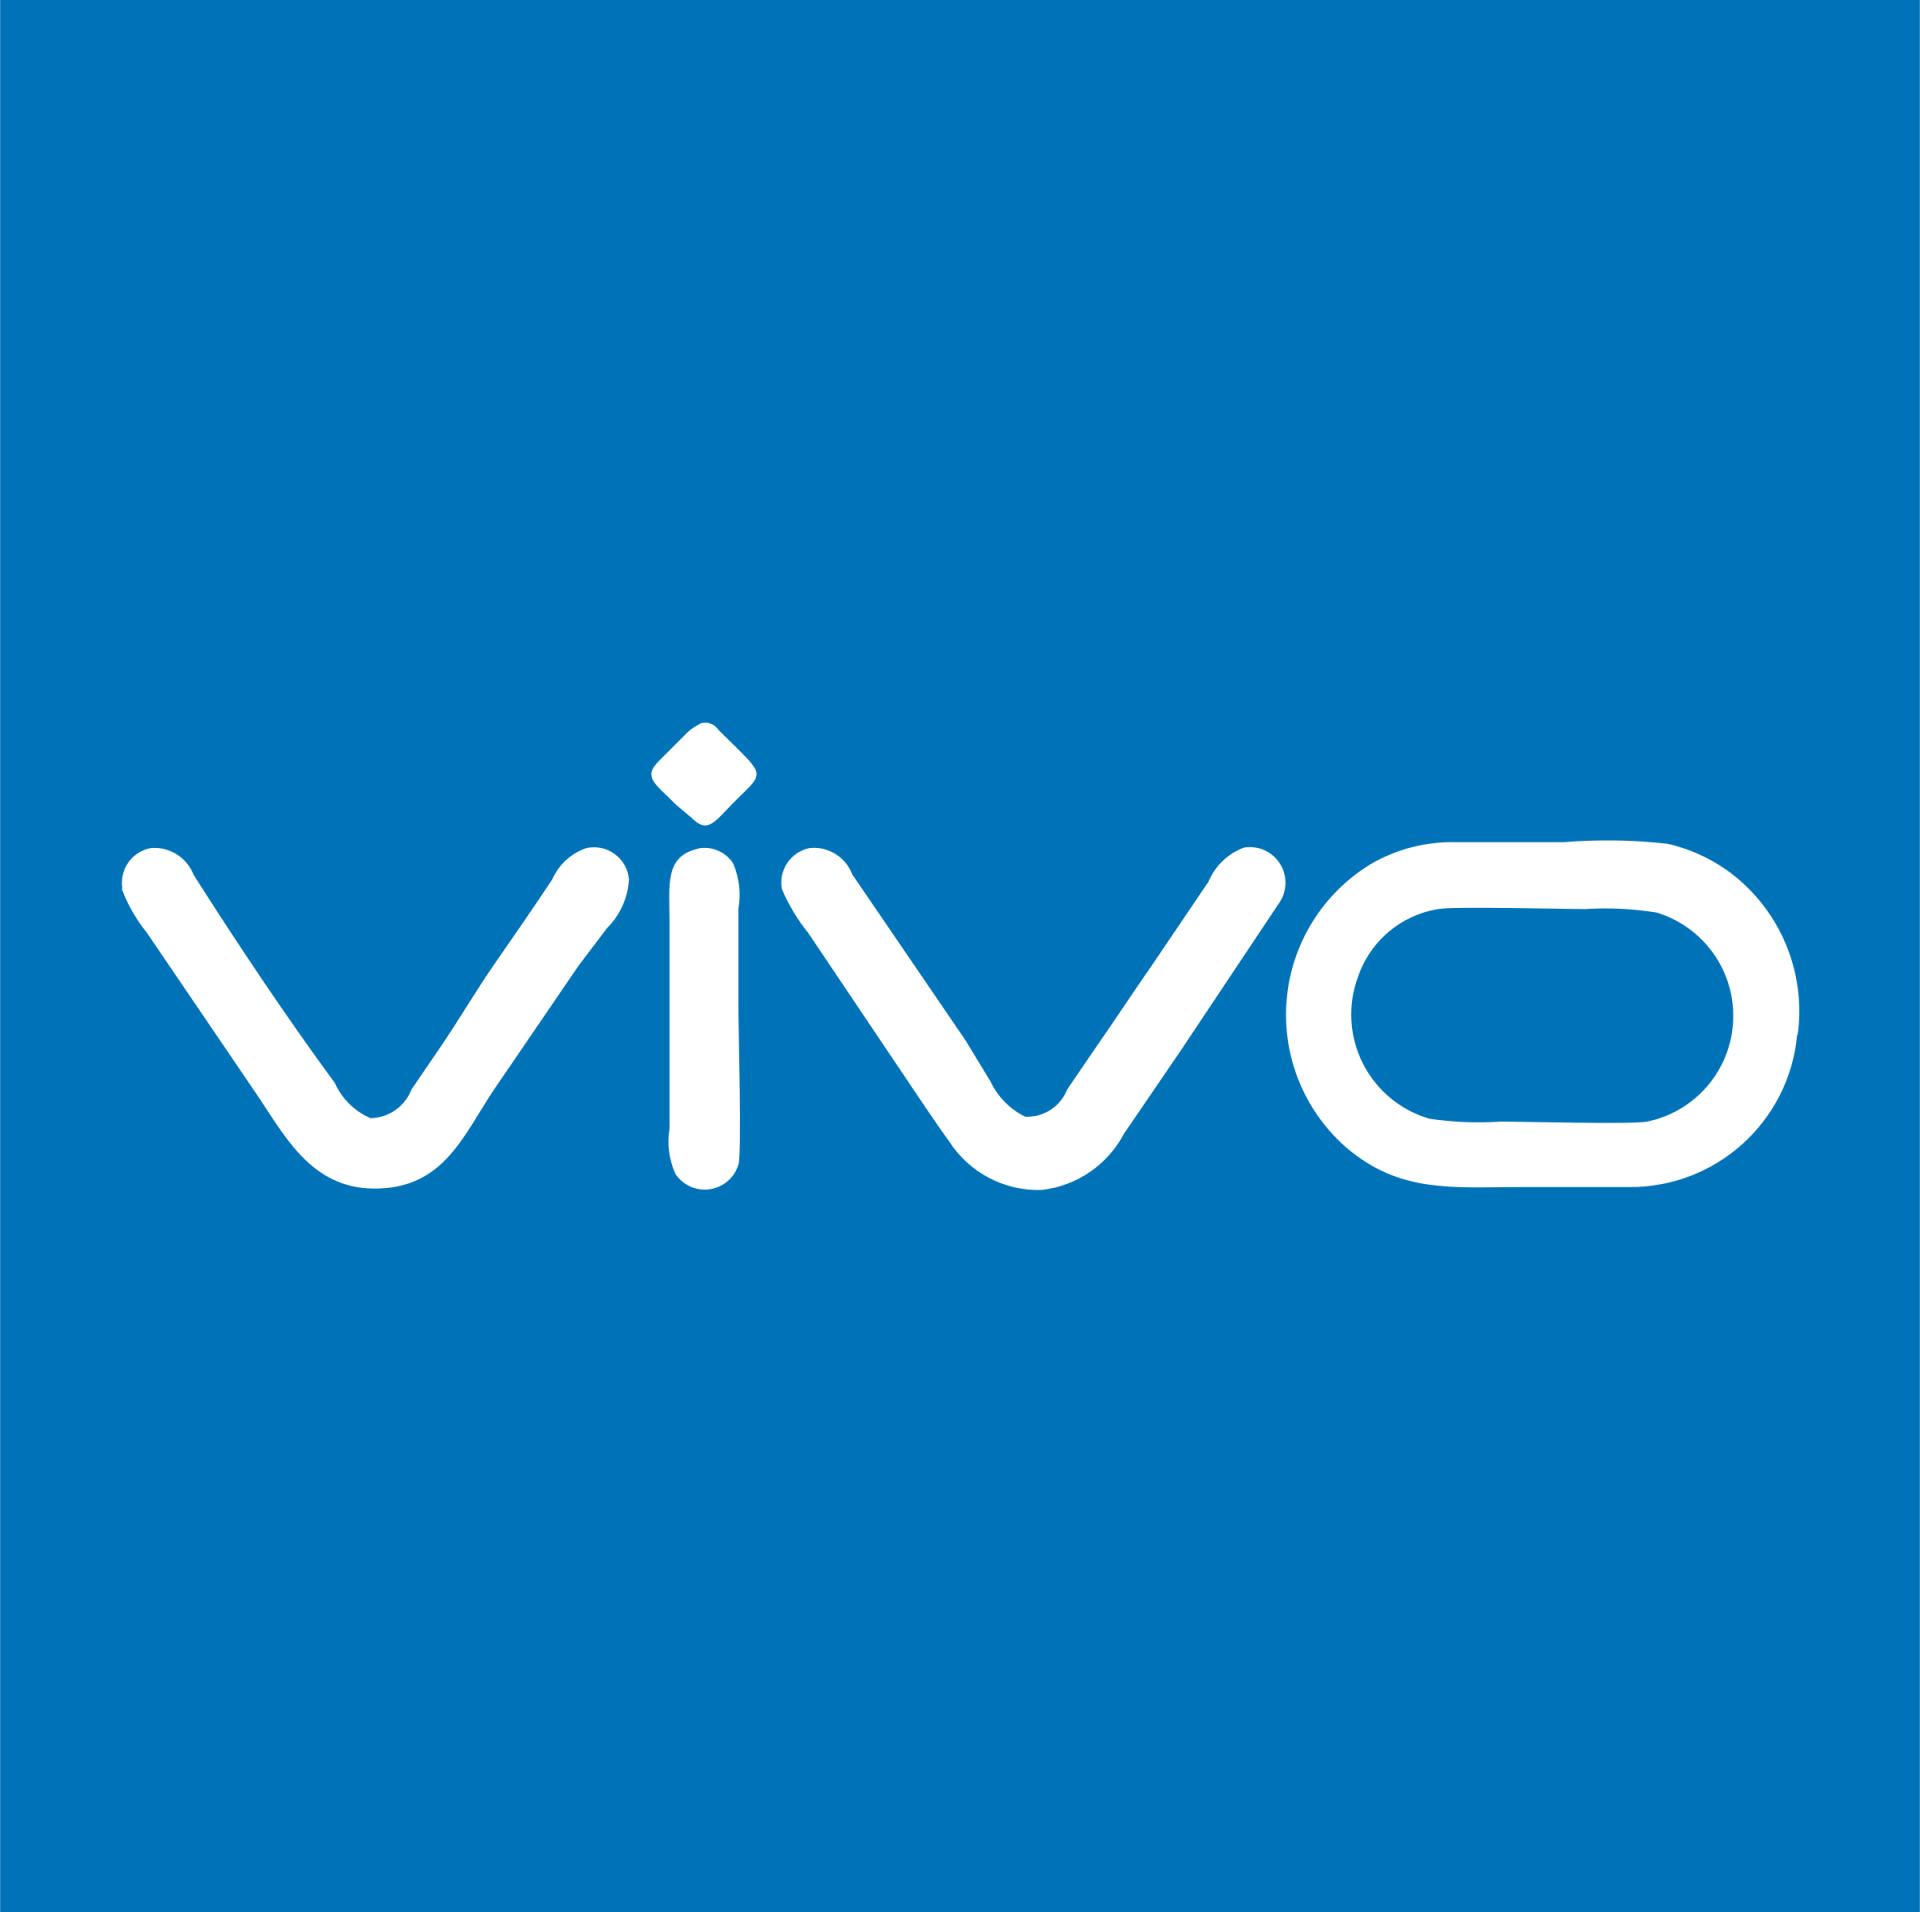 Vivo นำเทรนด์ “Intelligent Phone ยุค 5G” ล้ำสมัยด้วยนวัตกรรม AI